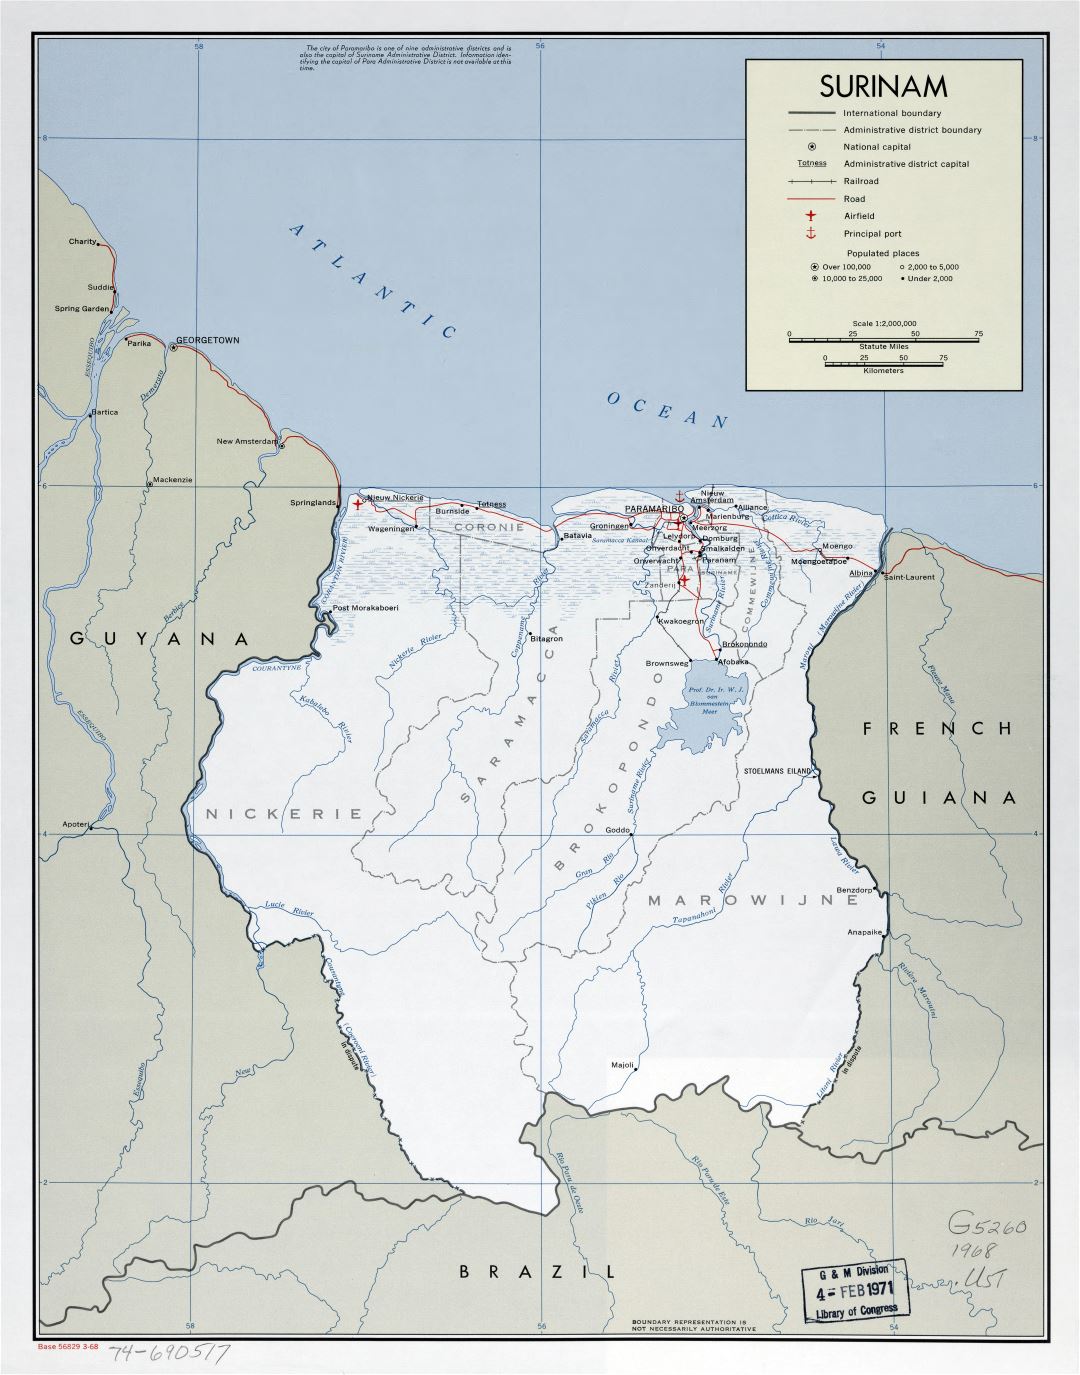 Крупномасштабная политическая и административная карта Суринама с пометками дорог, железных дорог, городов, морских портов и аэропортов - 1968